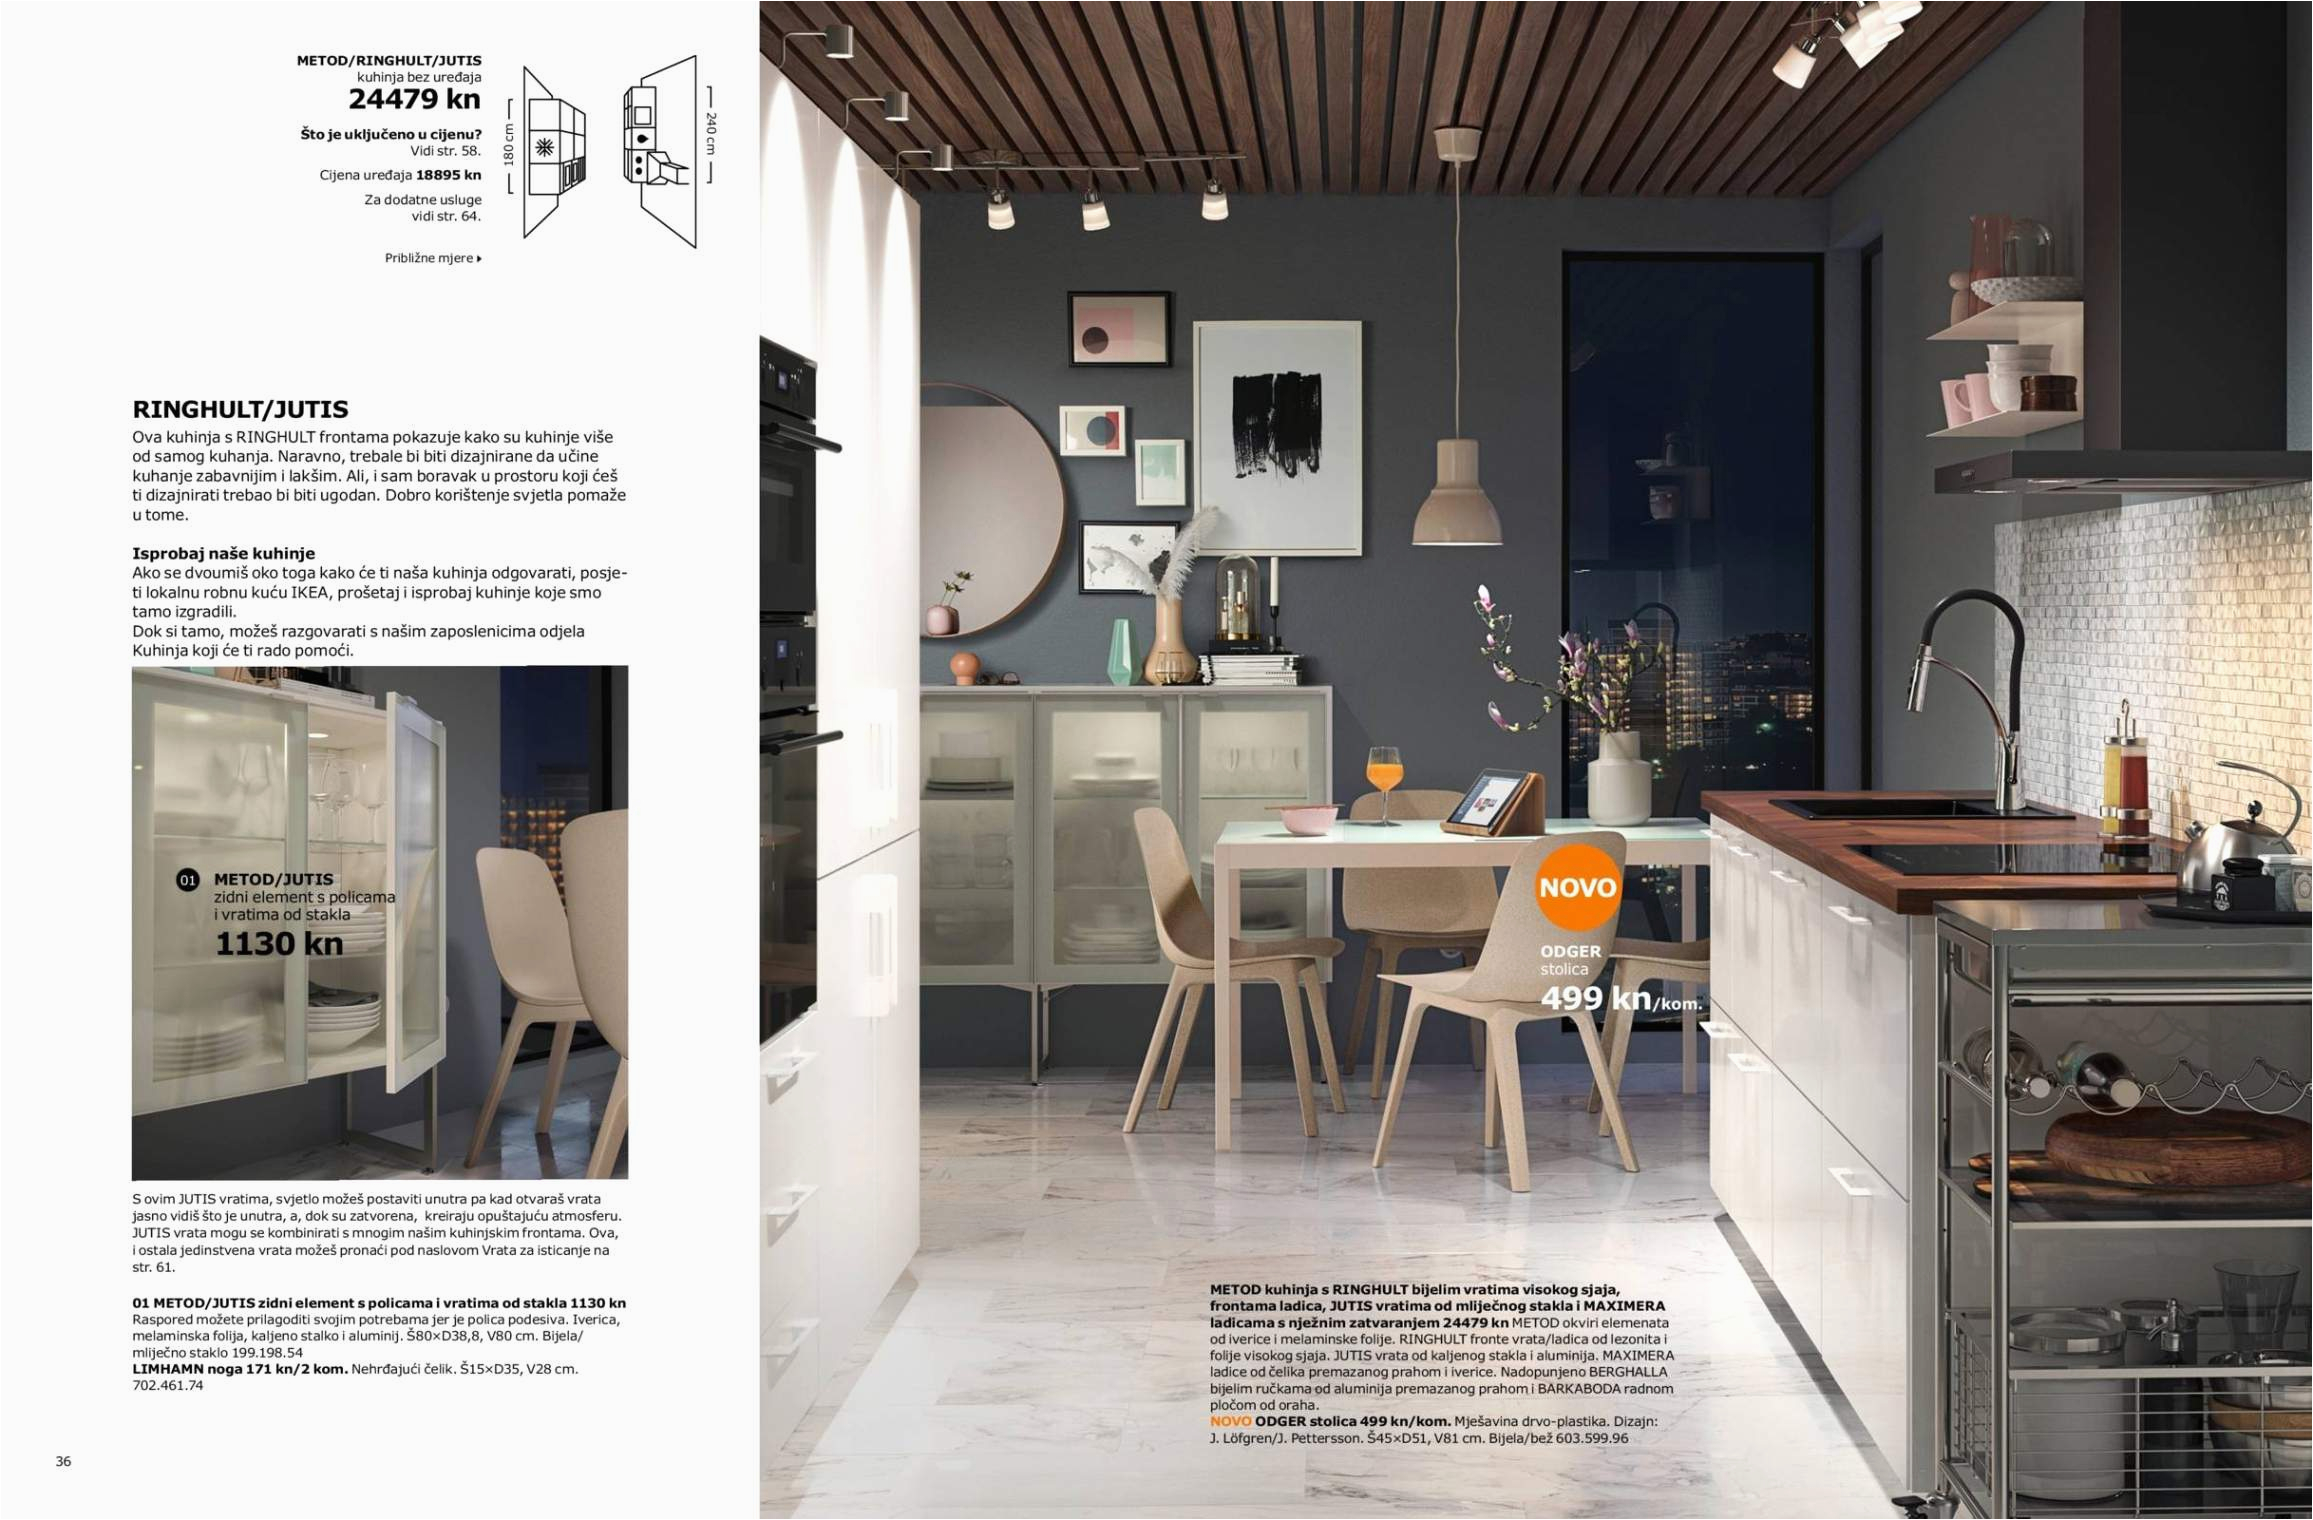 Ikea Graue Küche 39 Einzigartig Ikea Wohnzimmer Inspiration Neu